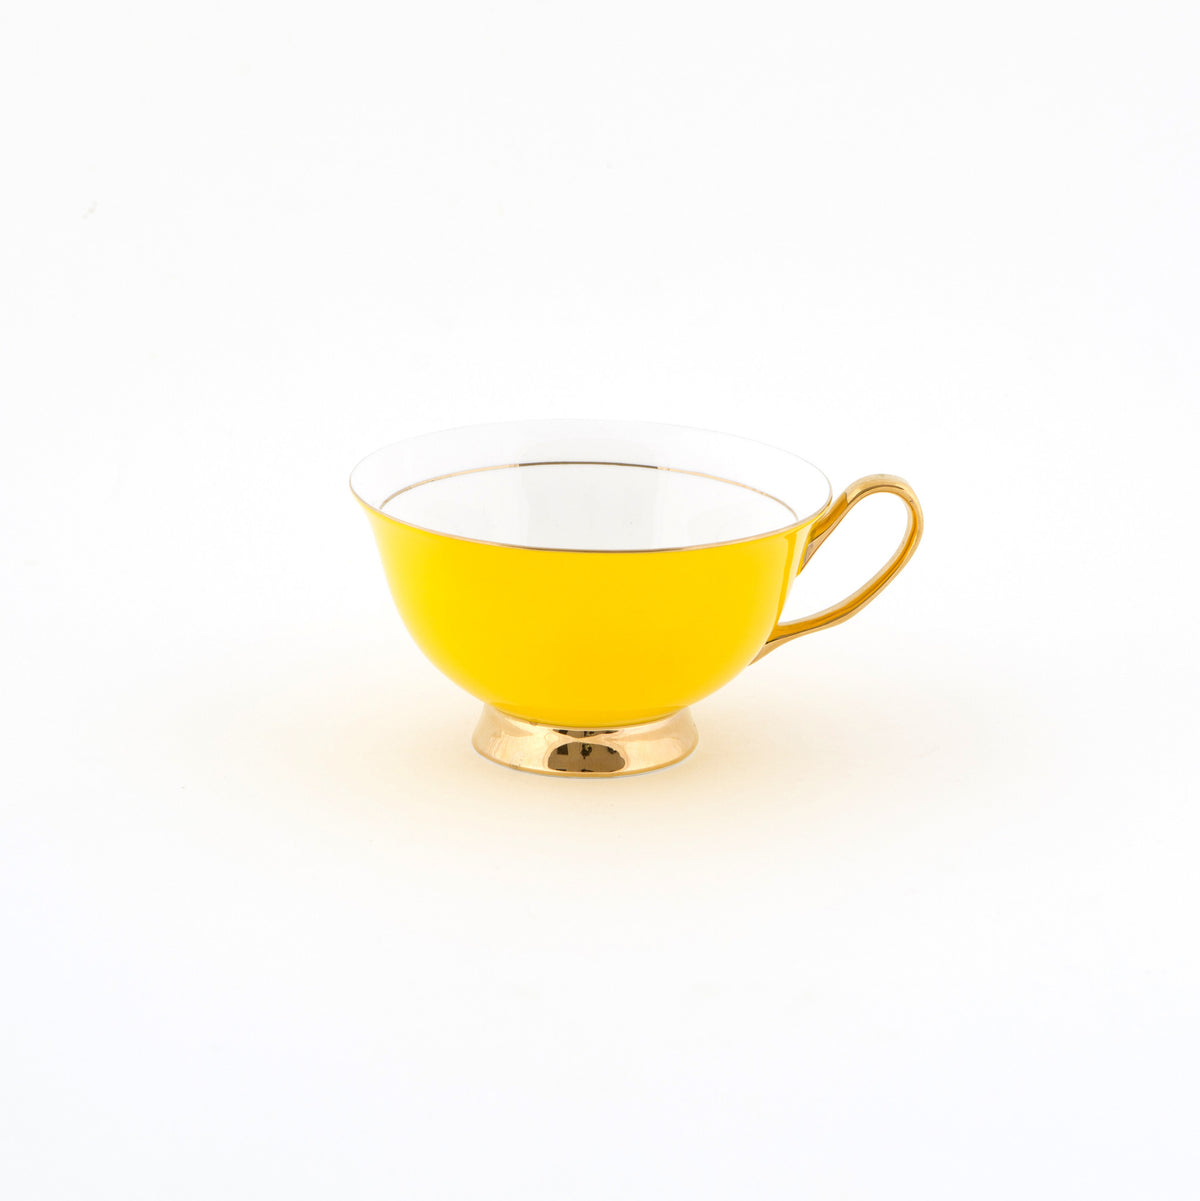 Yellow Teacup and Saucer